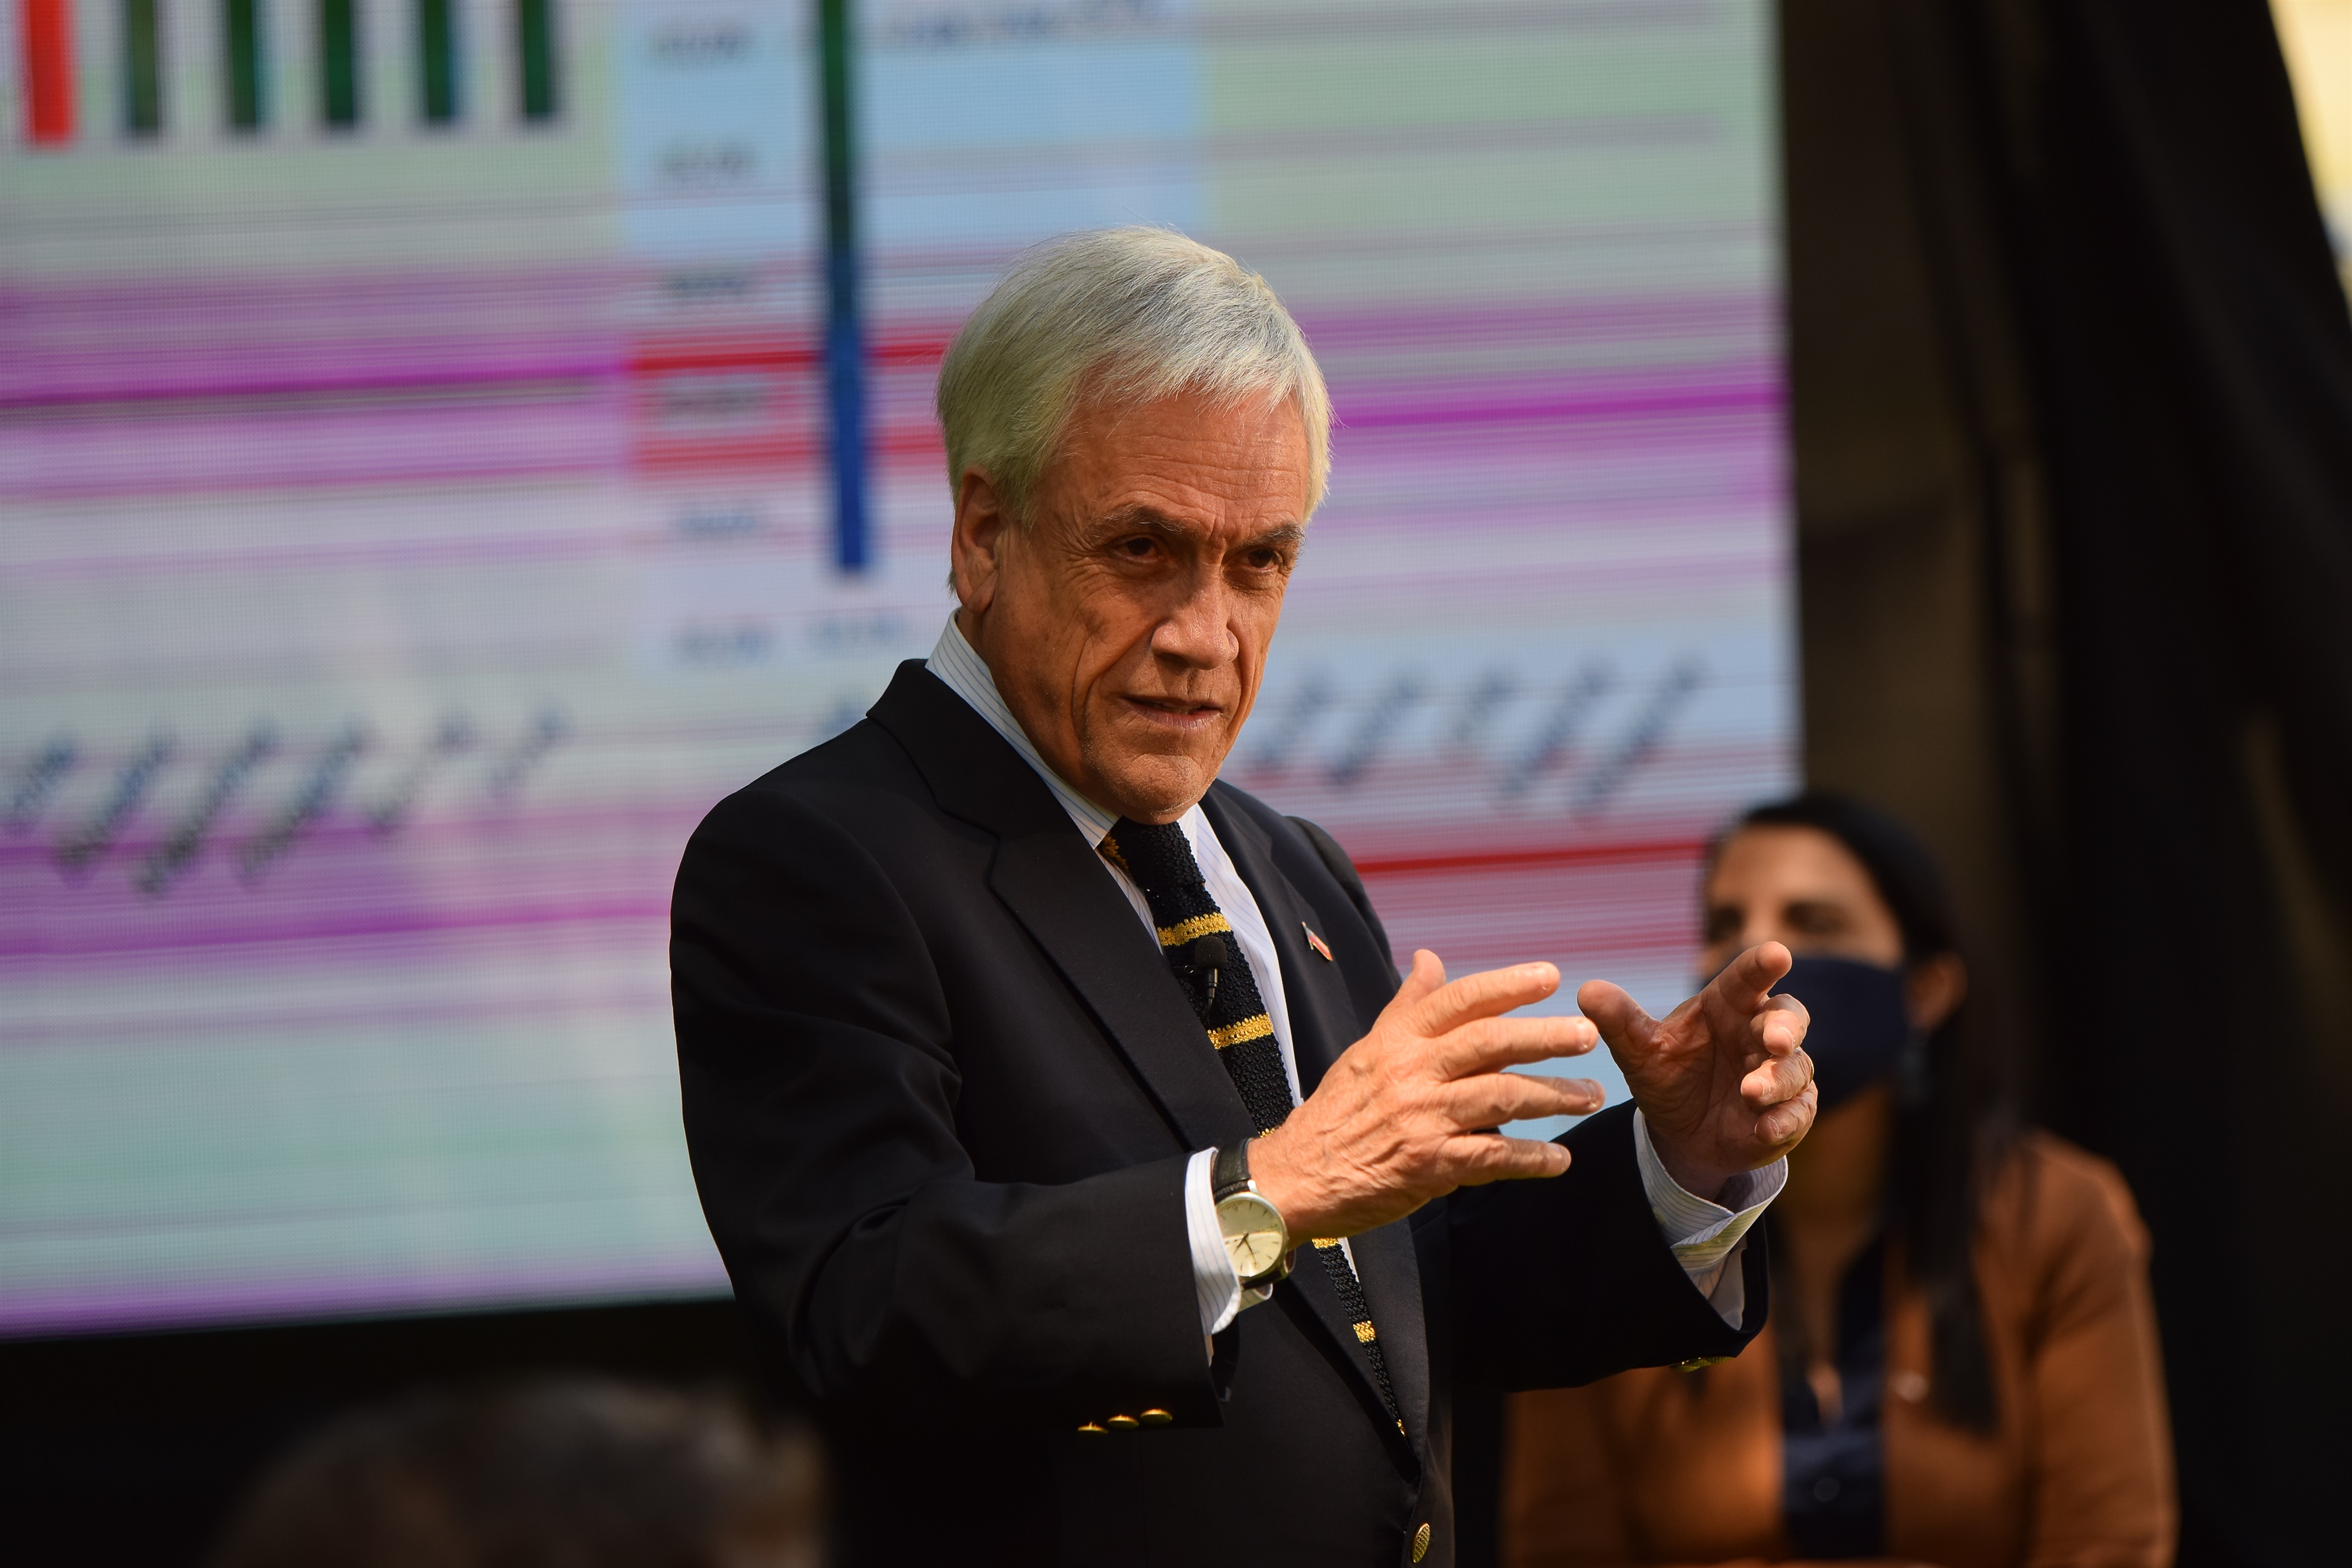 El presidente de Chile, Sebastián Piñera, ha sugerido que su homólogo de Estados Unidos, Donald Trump, debería "perder con hidalguía" y reconocer la victoria de su rival, Joe Biden, en las elecciones presidenciales del 3 de noviembre (AGENCIAUNO / PABLO OVALLE ISASMENDI)
